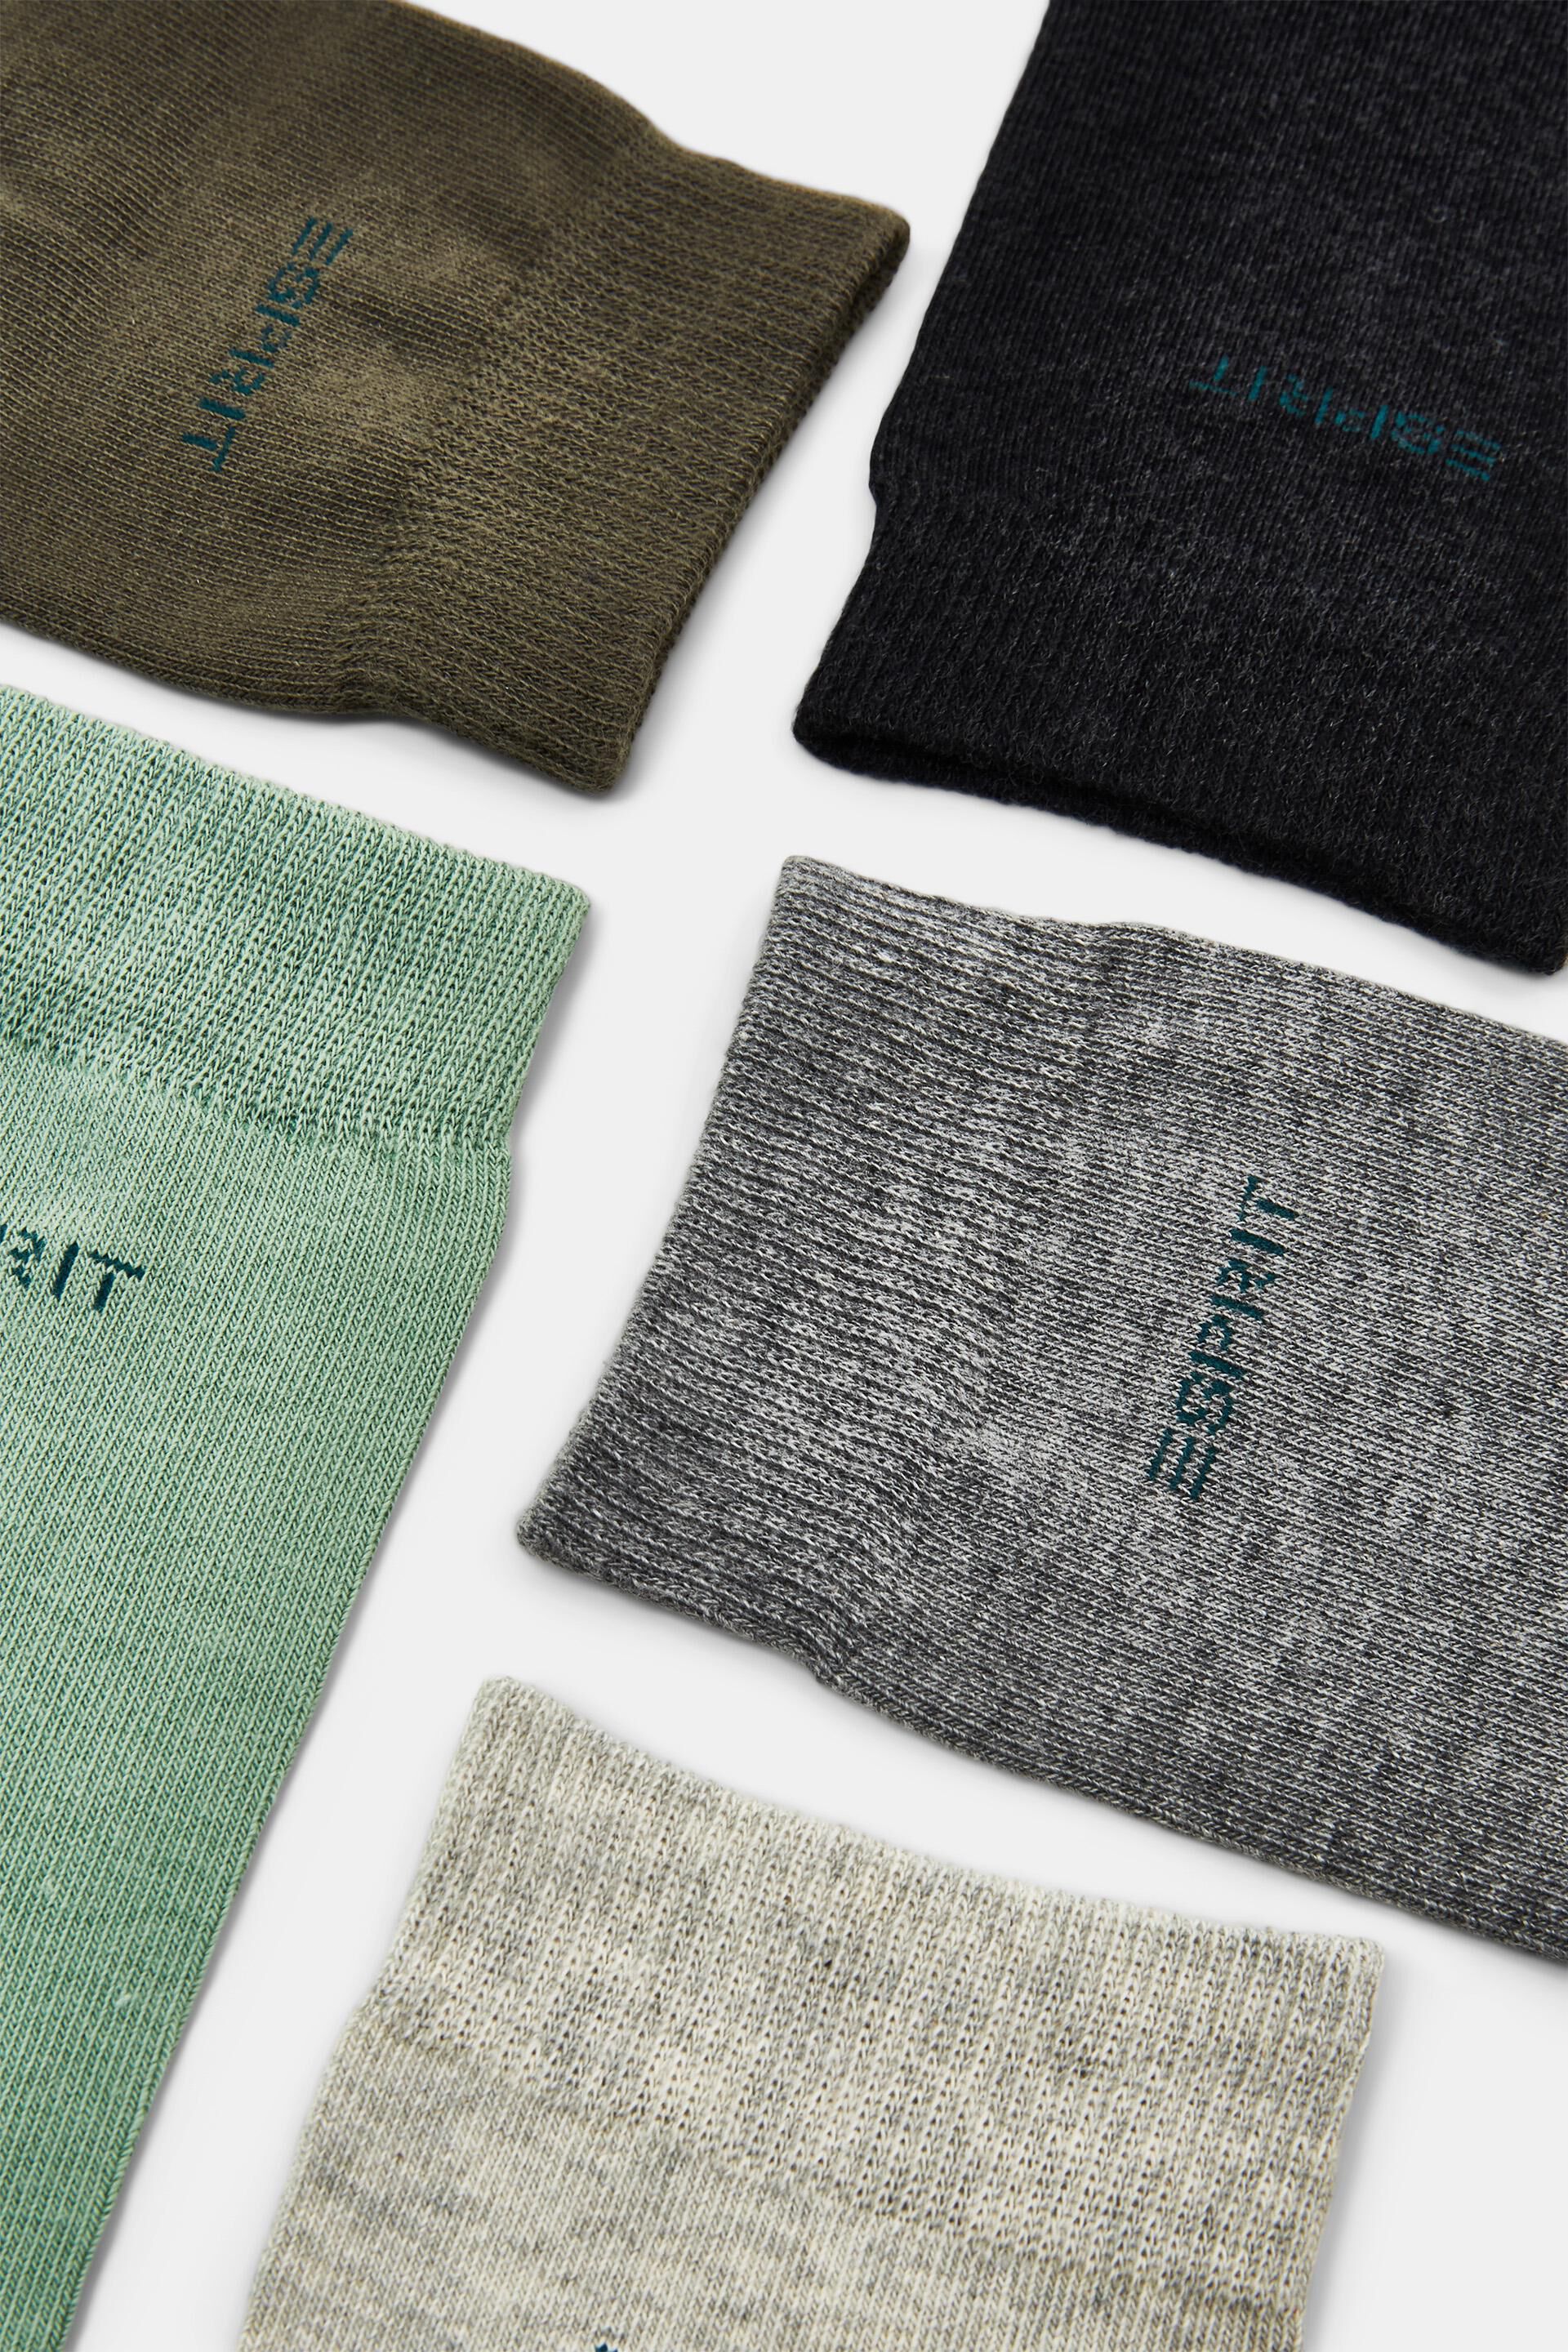 Esprit Online Store 5er-Pack Socken Bio-Baumwolle aus